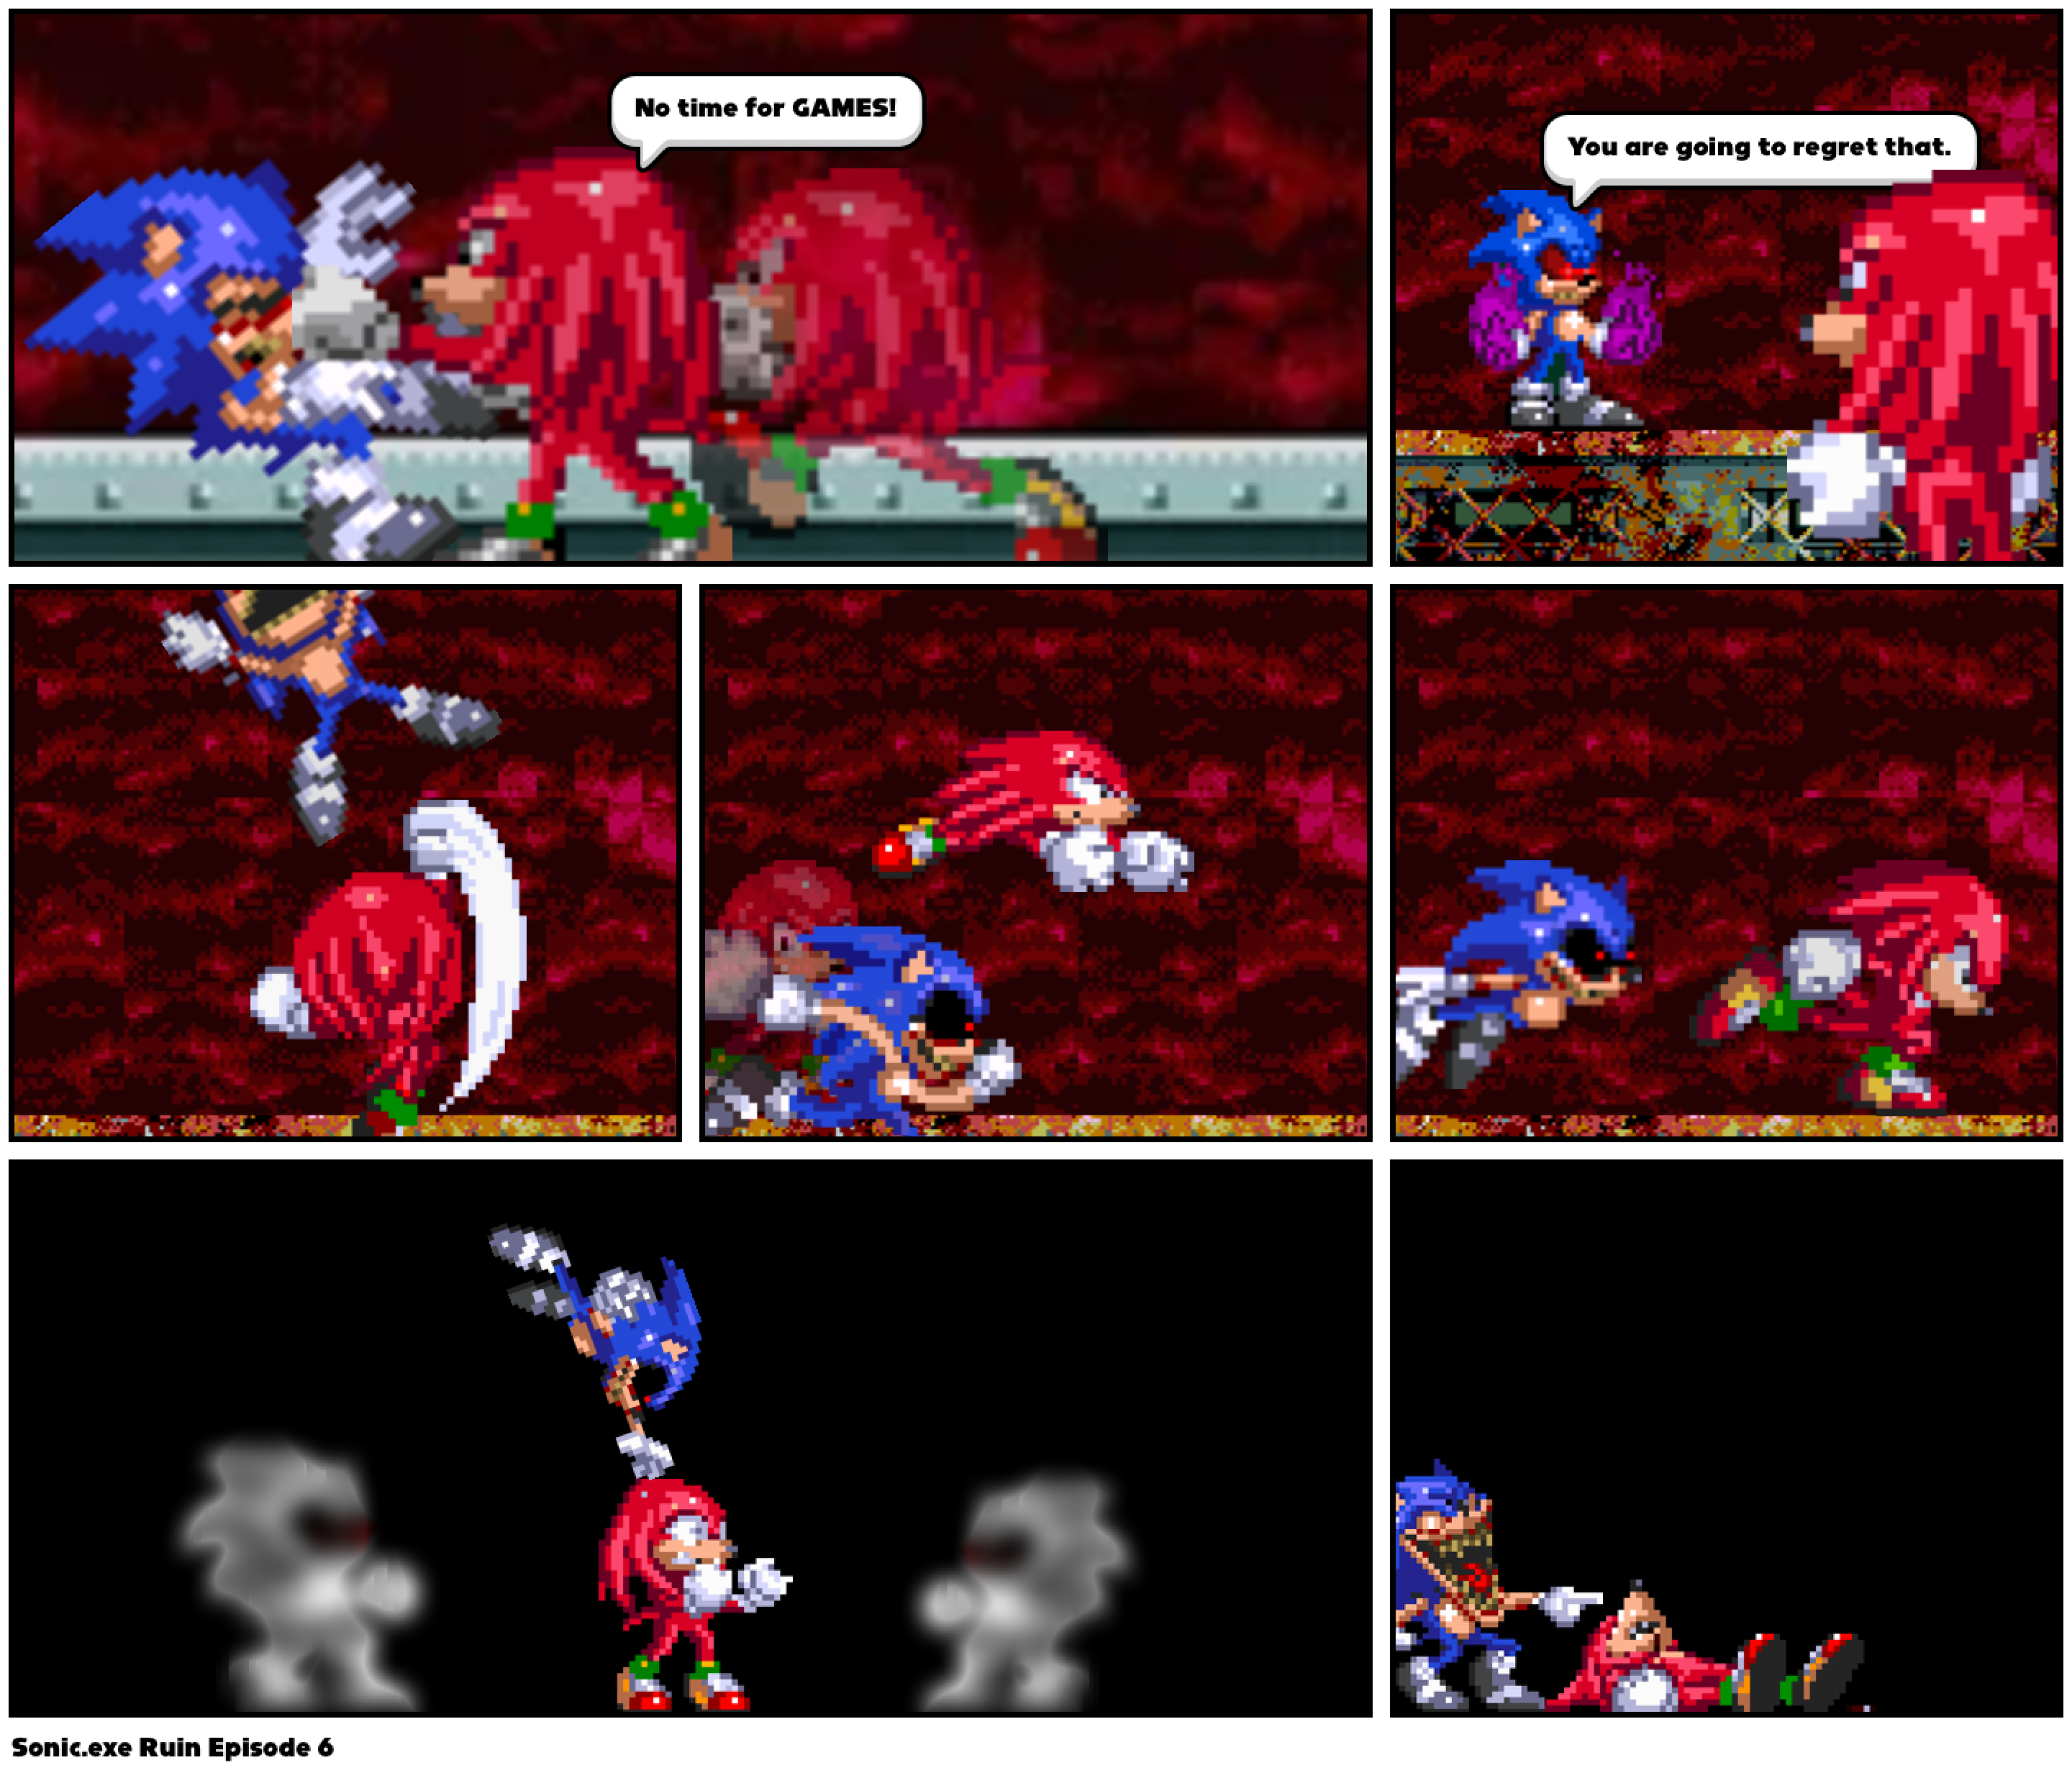 Sonic.exe Ruin Episode 6